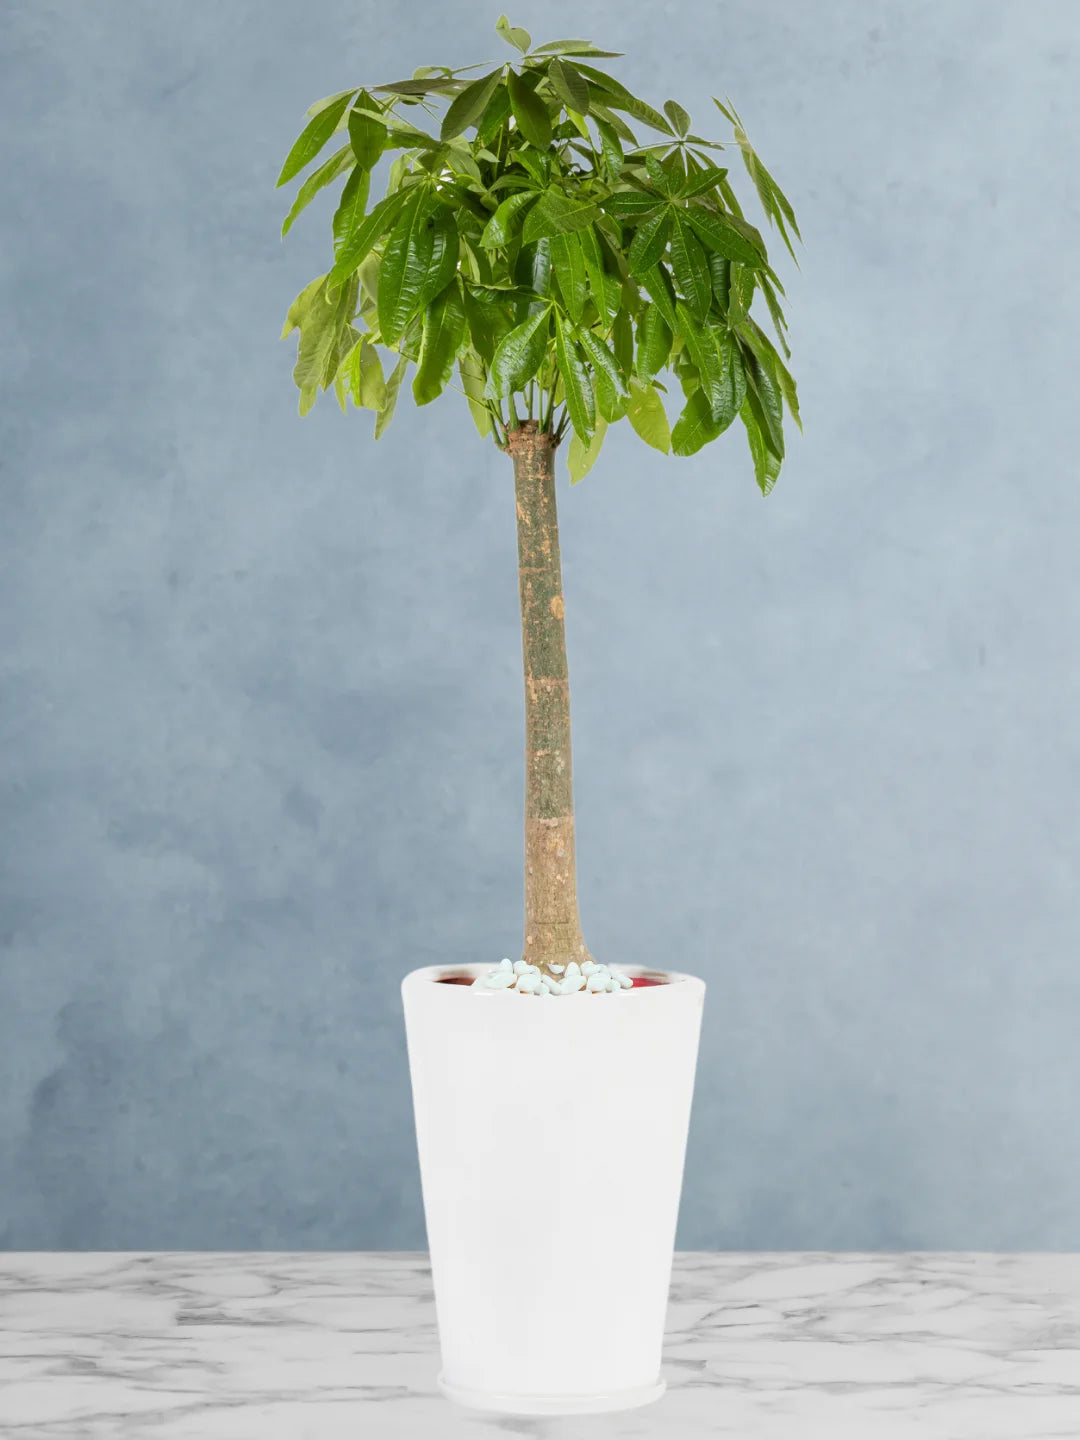 XL Pachira Aquatica: Your Feng Shui Money Tree